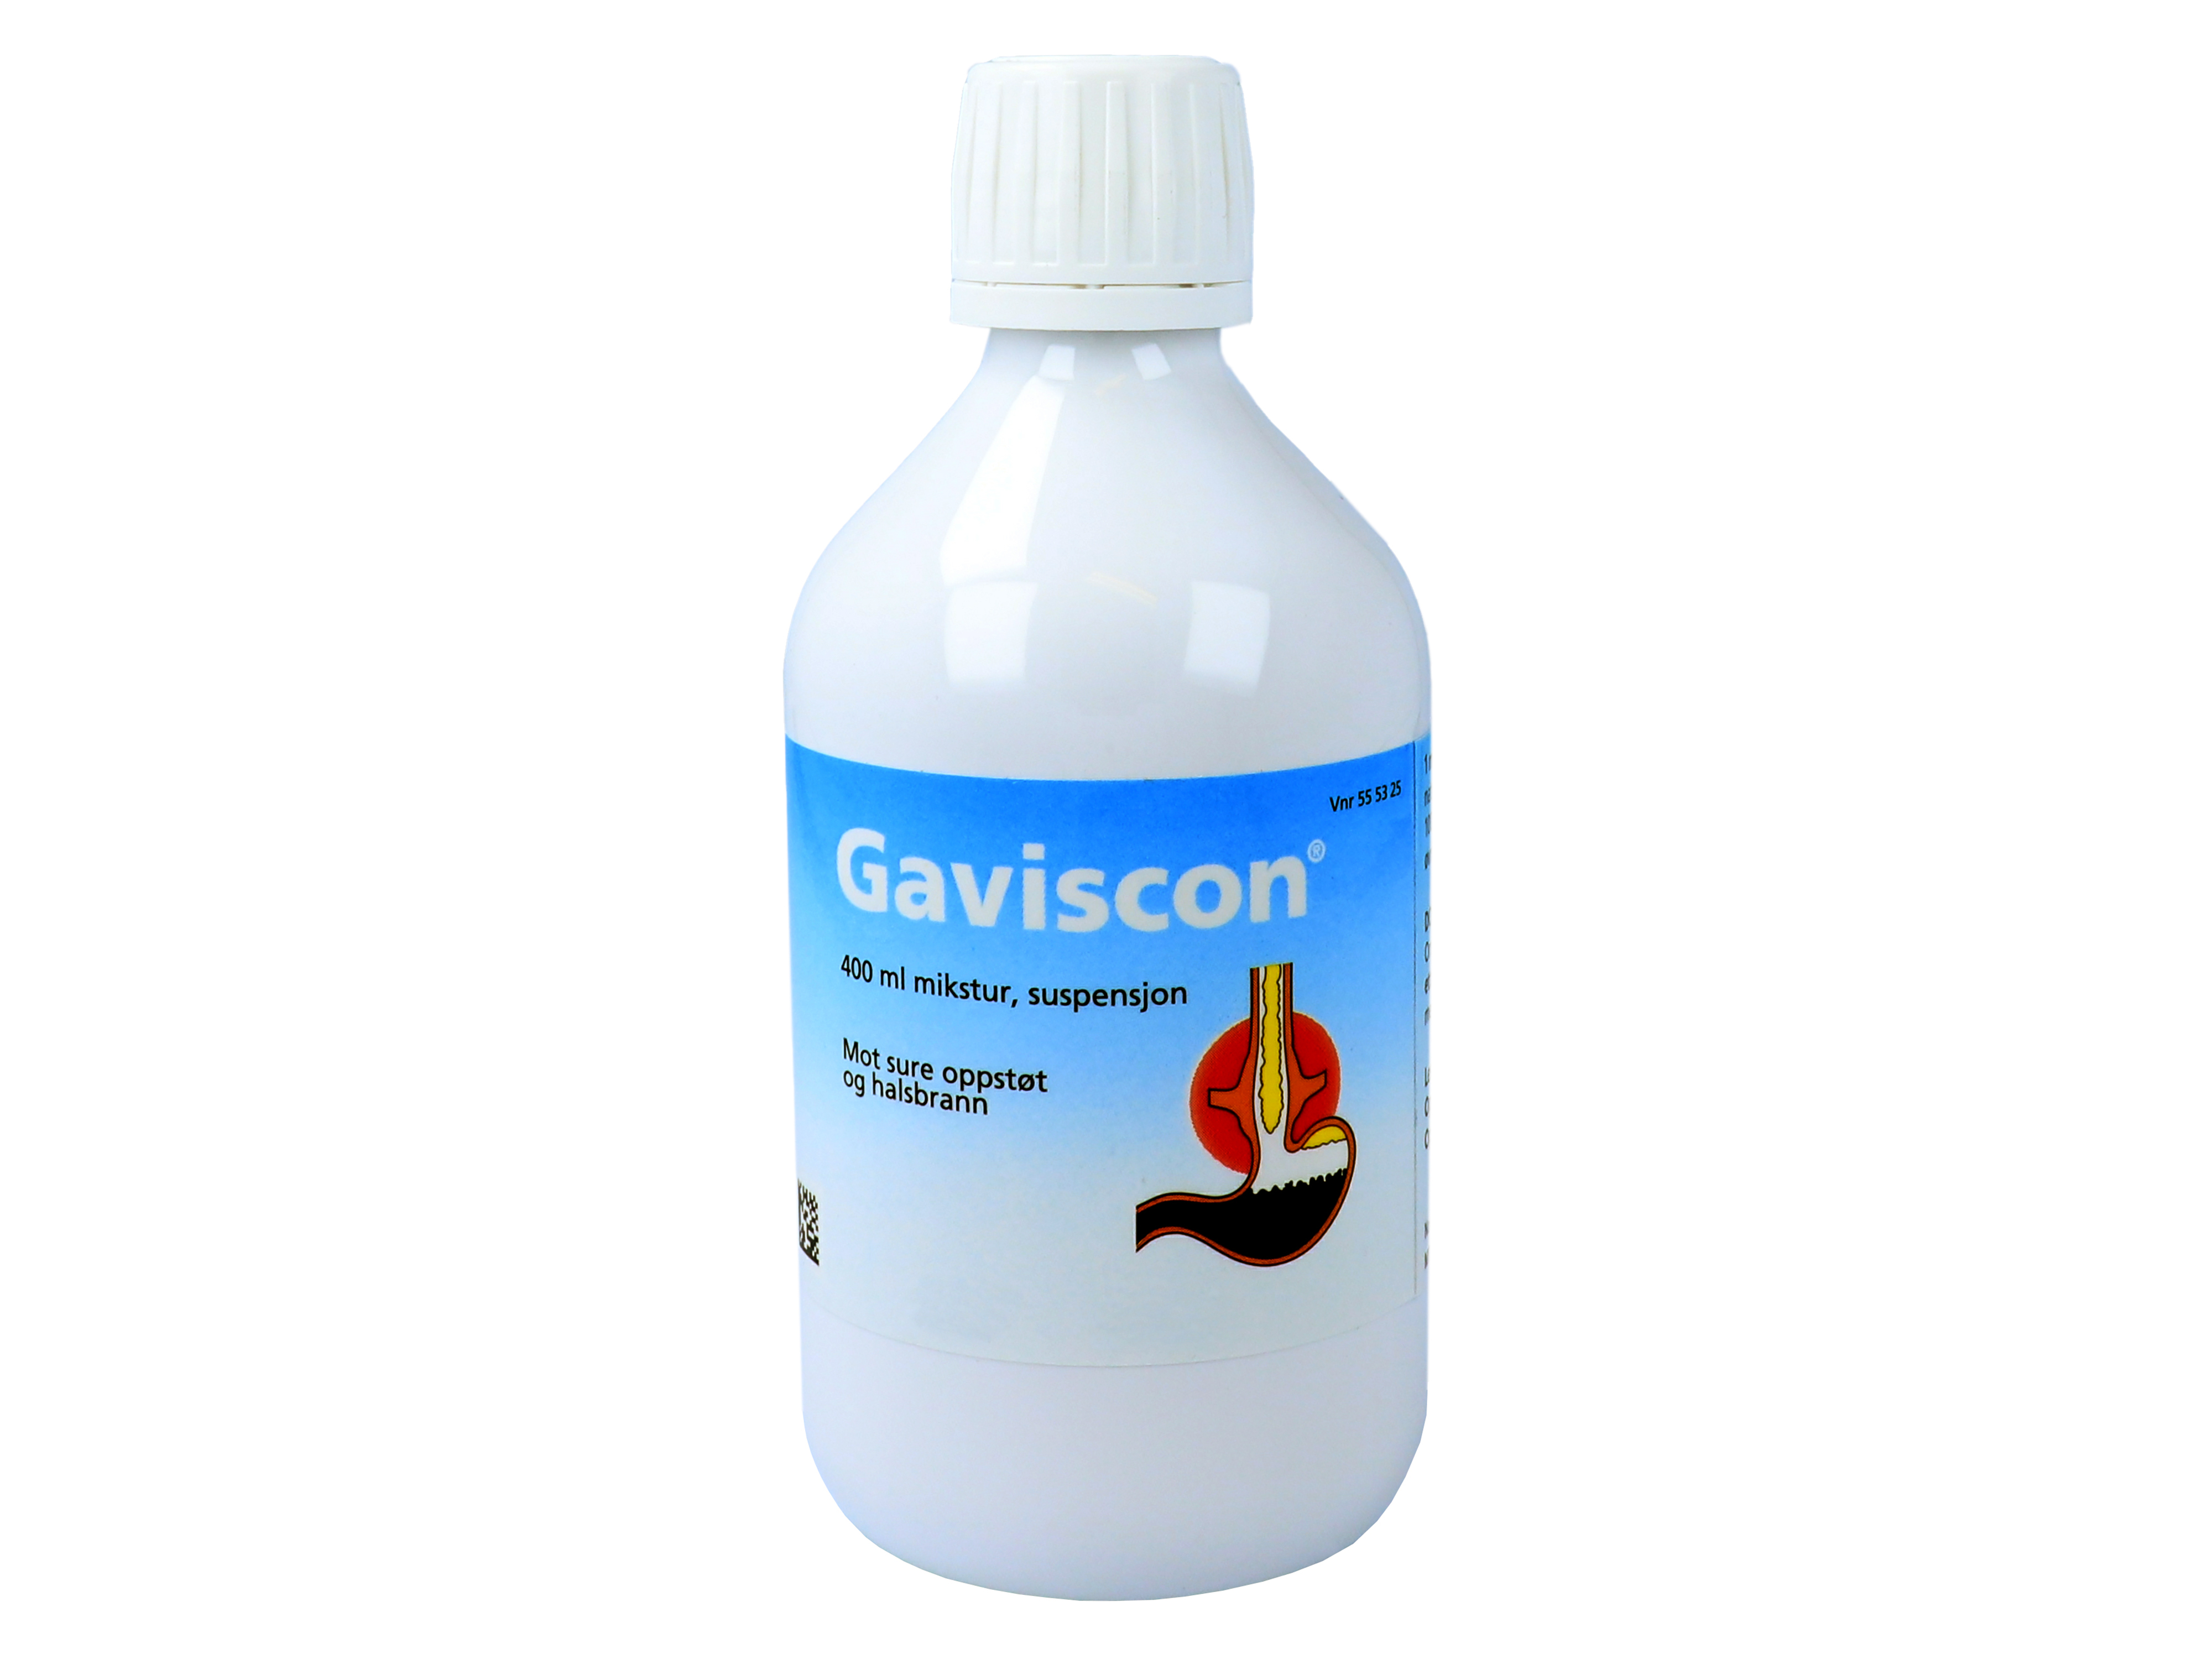 Gaviscon Mikstur, 400 ml.